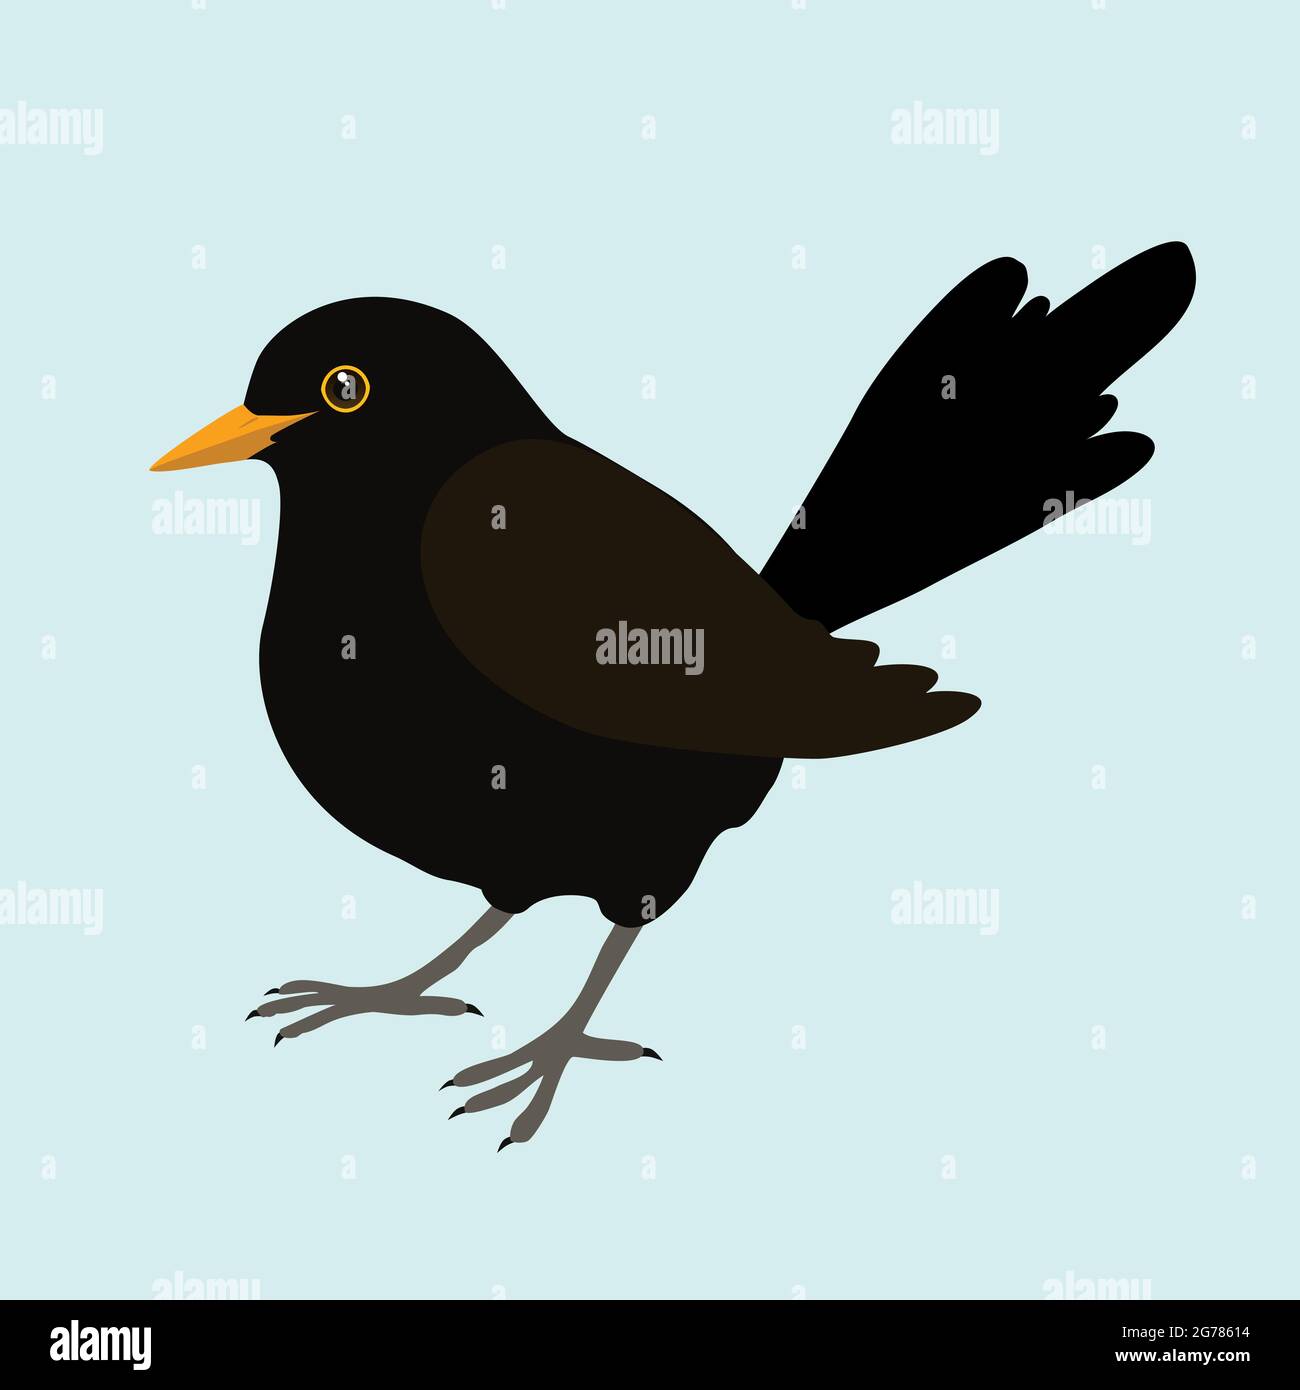 Un'illustrazione di un uccello nero. È un uccello maschile e lo sfondo è blu pallido. L'uccello è tagliato fuori. Illustrazione Vettoriale